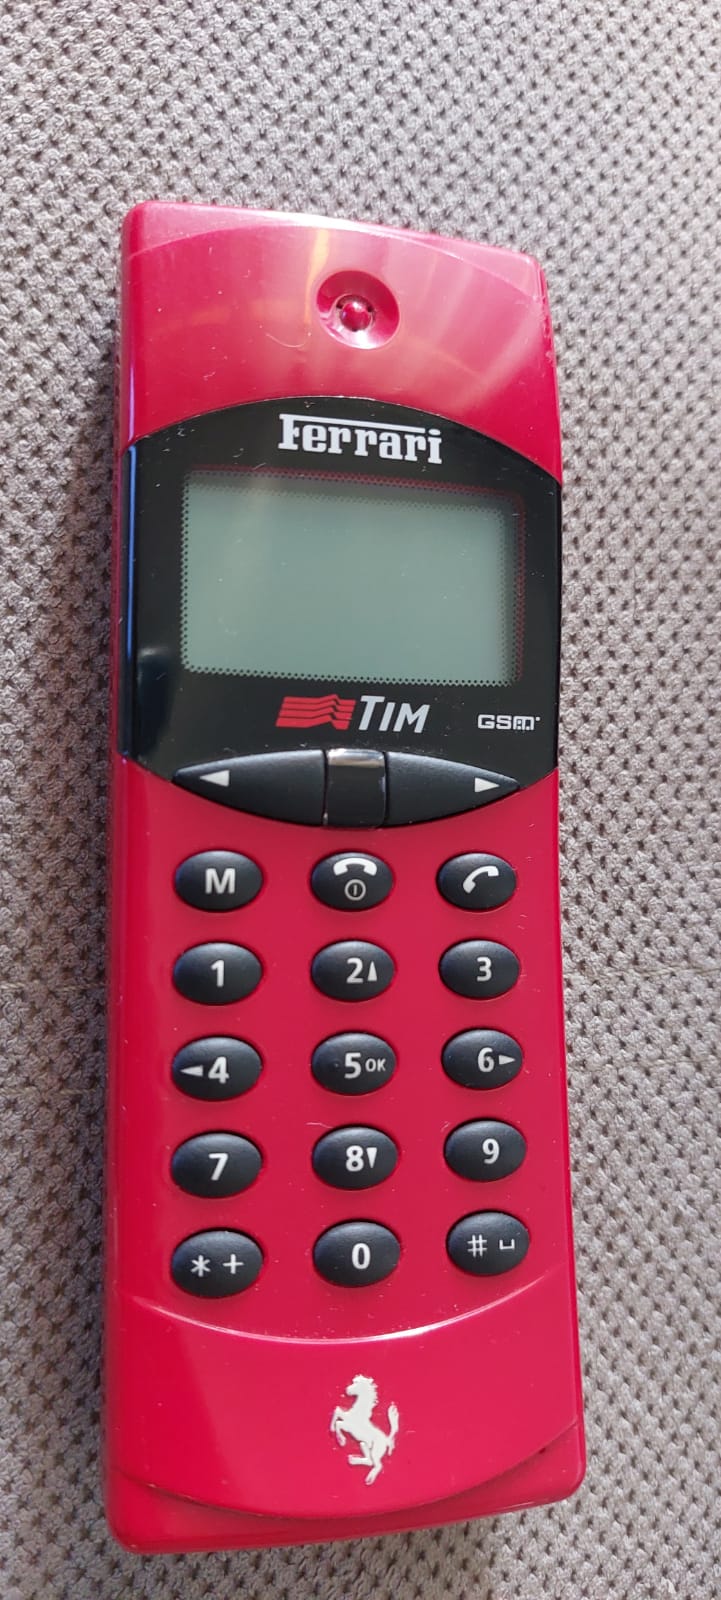 Ferrari F10 GSM hagenuk TIM phones